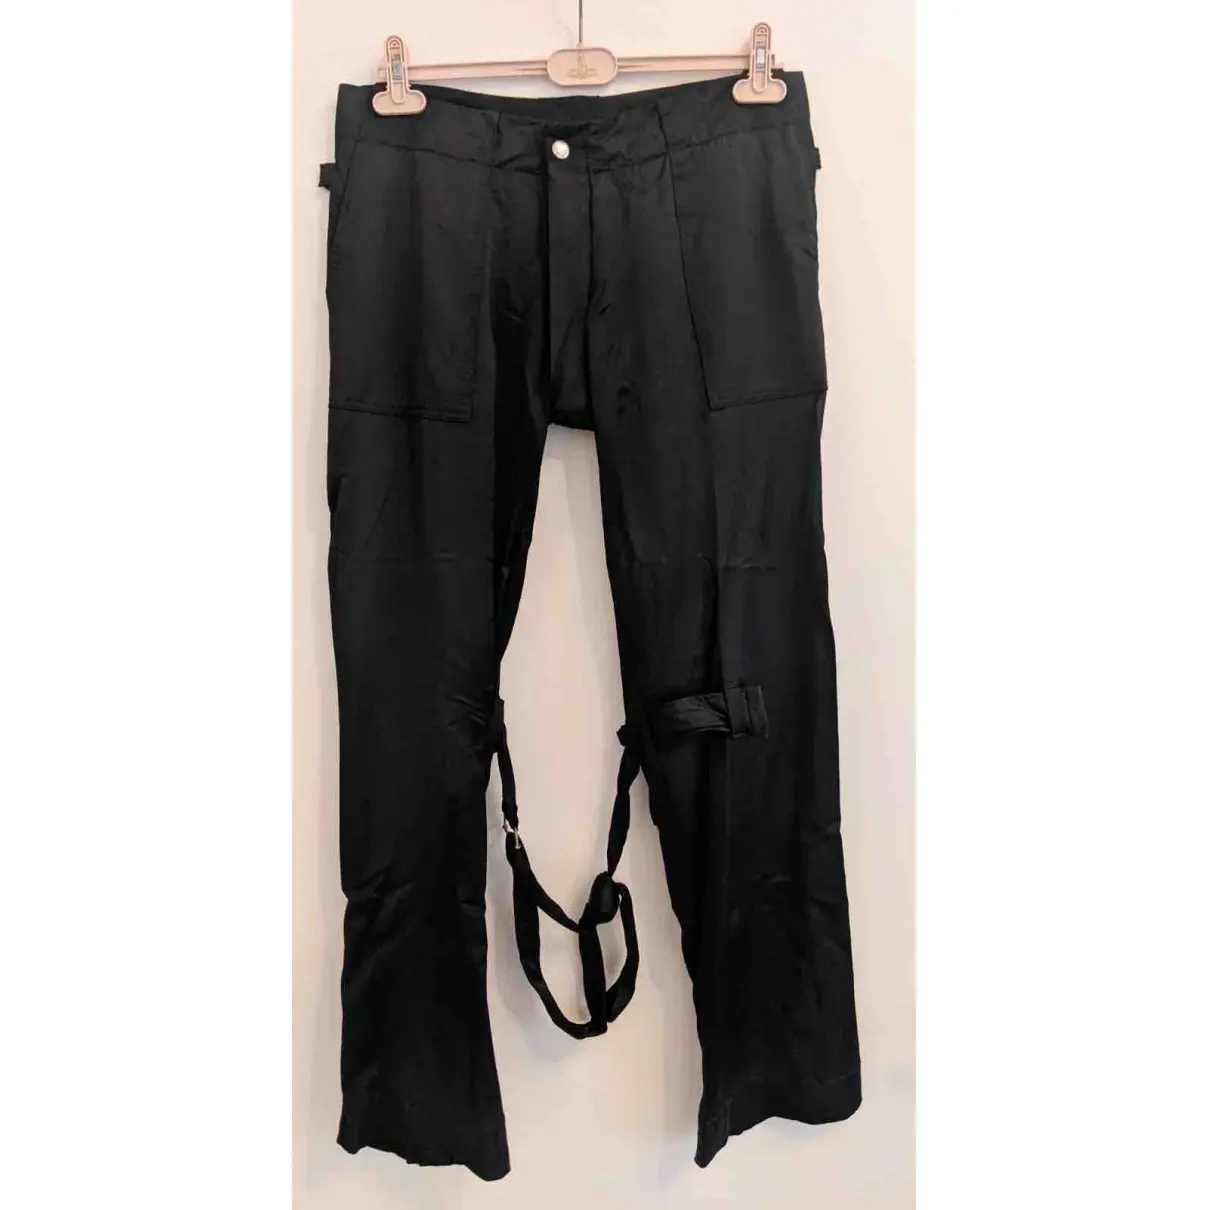 Buy Vivienne Westwood Trousers online - Vintage